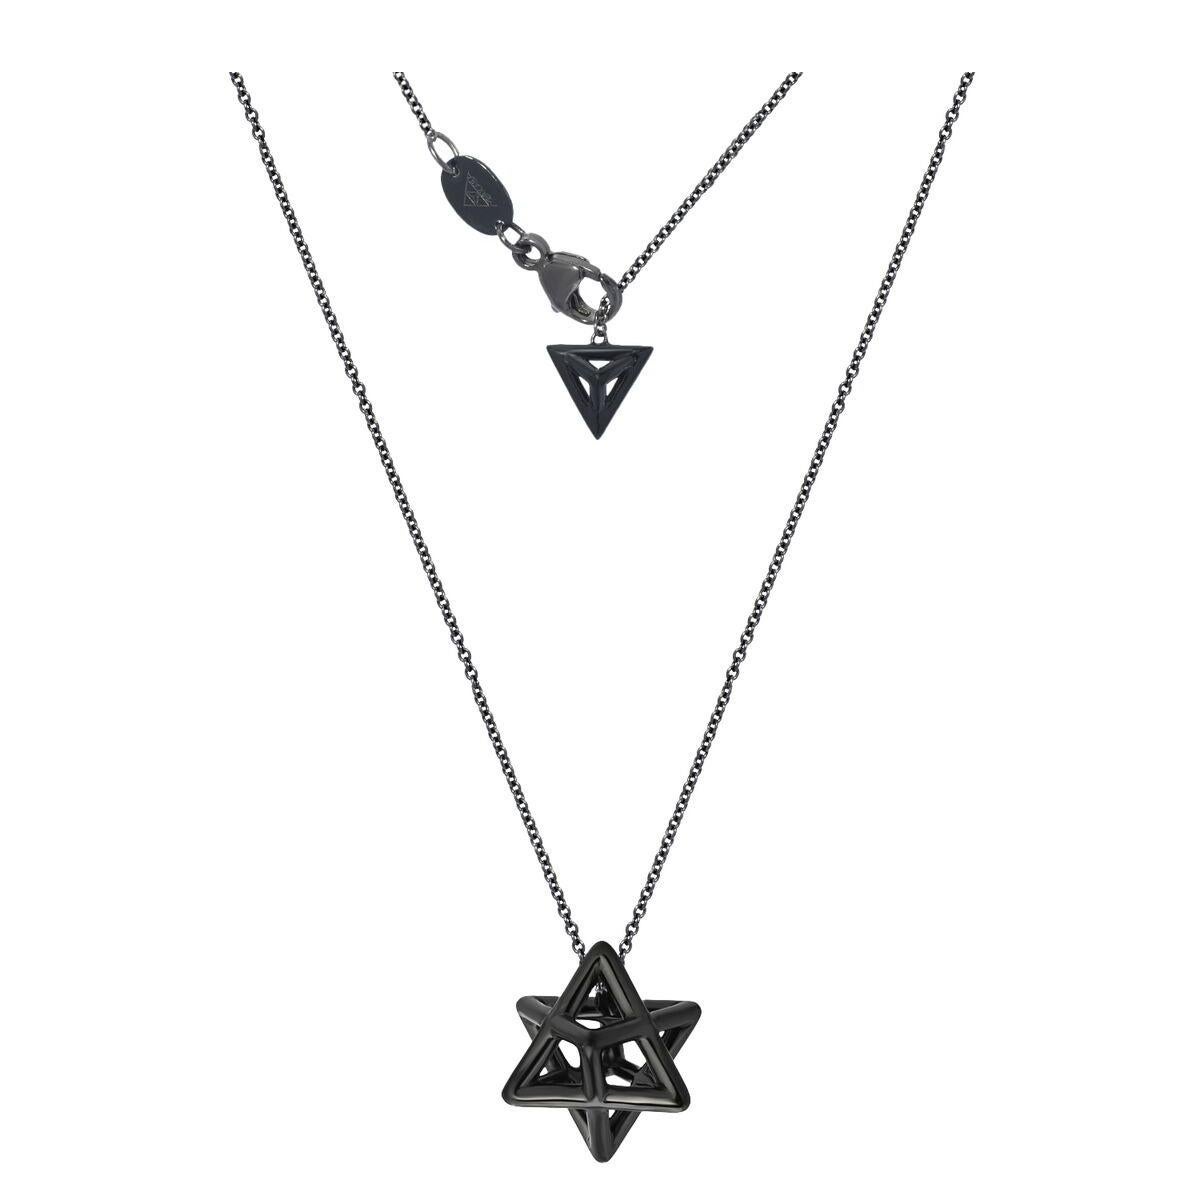 Die Merkaba-Halskette aus schwarzem Sterlingsilber für Männer und Frauen ist ein sakrales, geometrisches Schmuckstück in Erbstückqualität, das sich durch eine hervorragende Detailgenauigkeit, außergewöhnlichen Schliff, Symmetrie und Ausgewogenheit